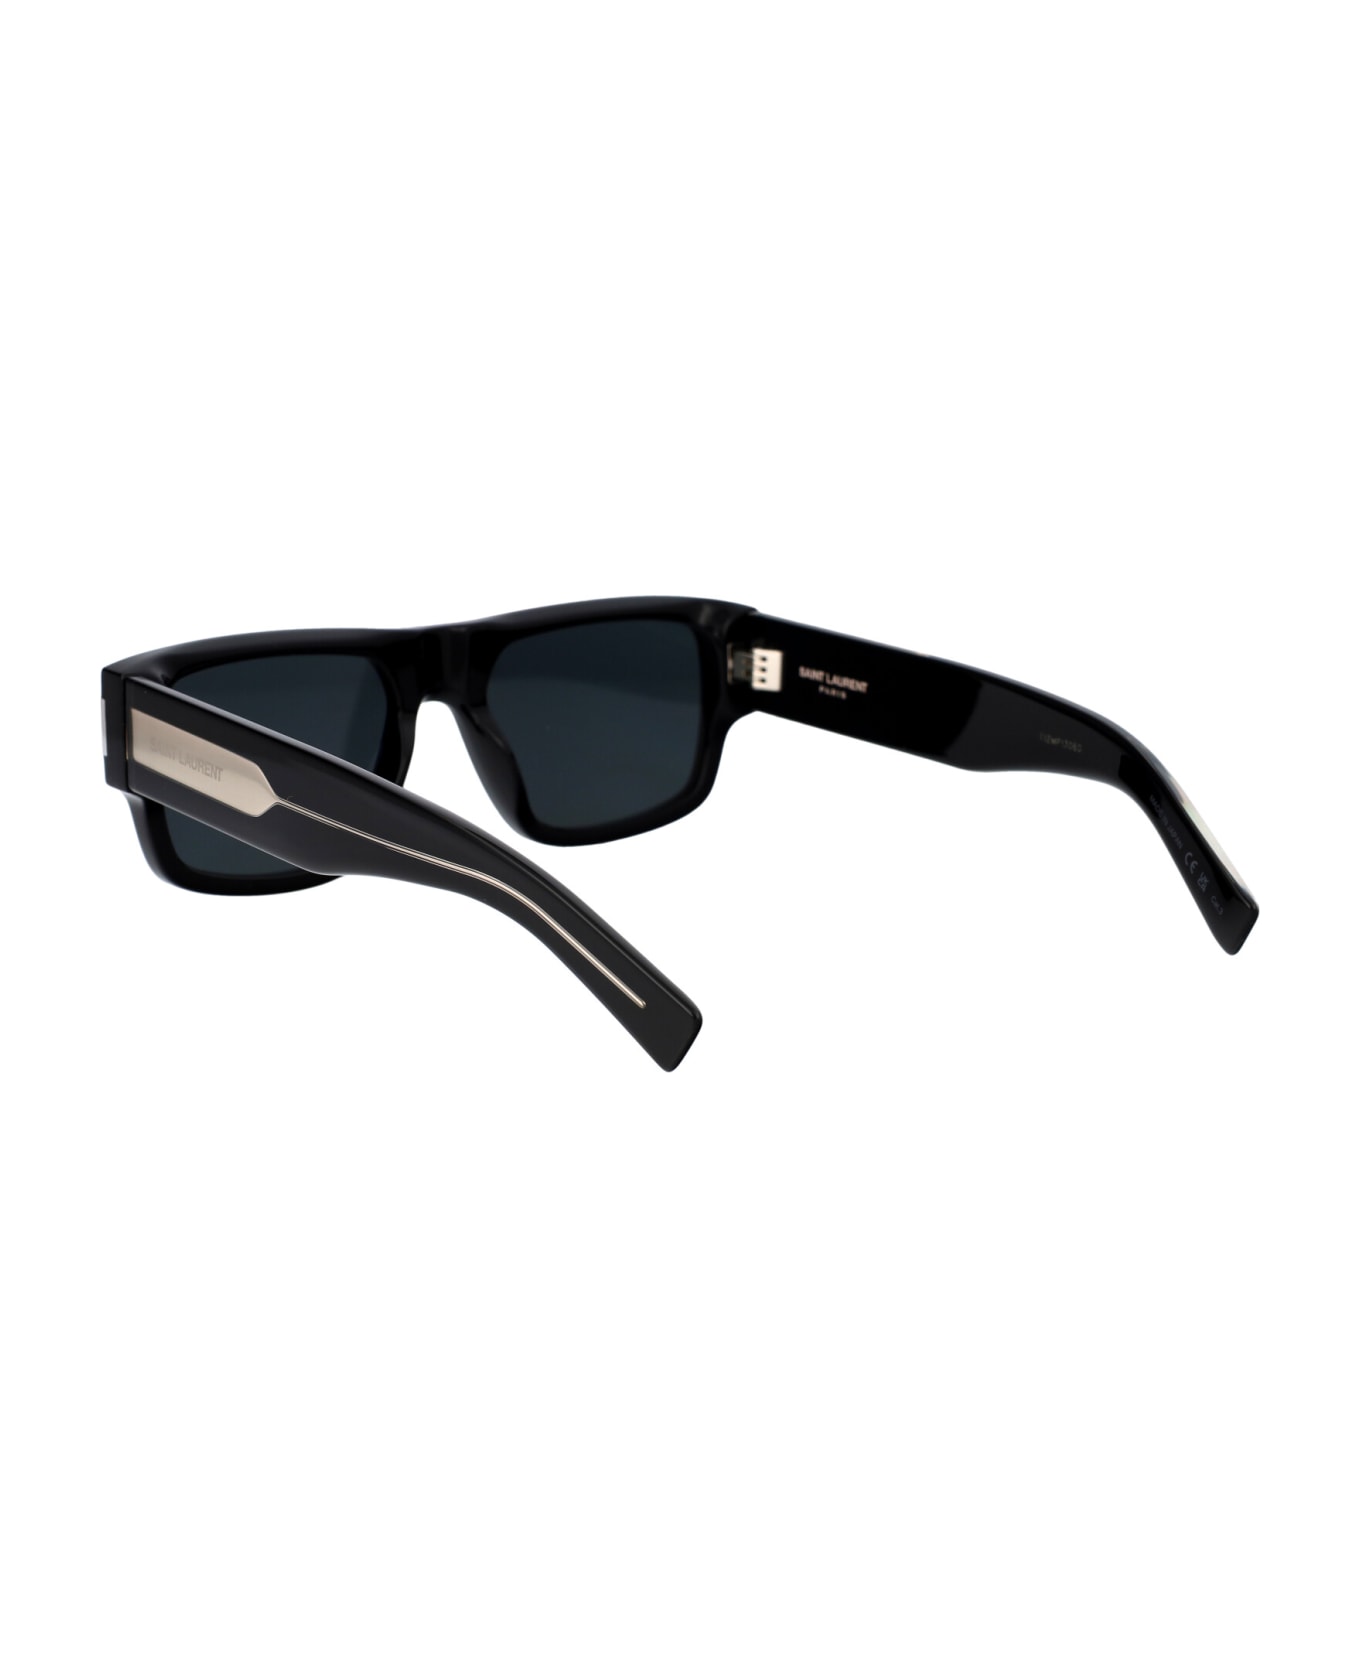 Saint Laurent Eyewear Sl 659 Sunglasses - 001 BLACK CRYSTAL BLACK